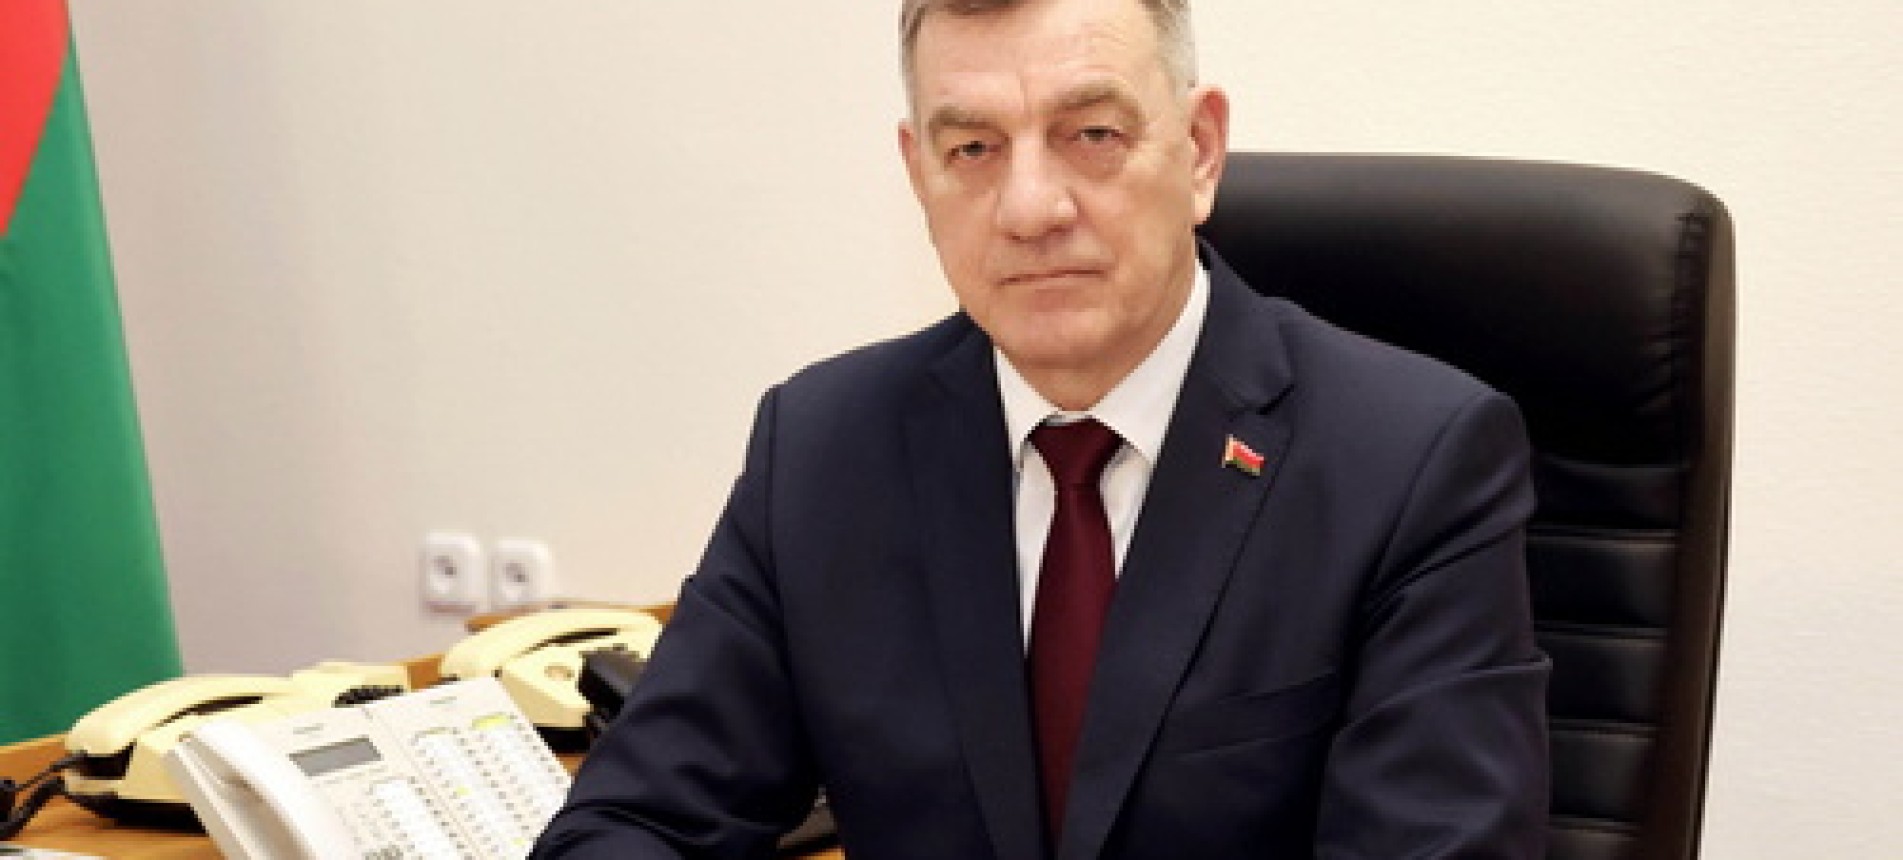 Управляющий делами Президента Республики Беларусь Юрий Назаров награжден Орденом Отечества III степени